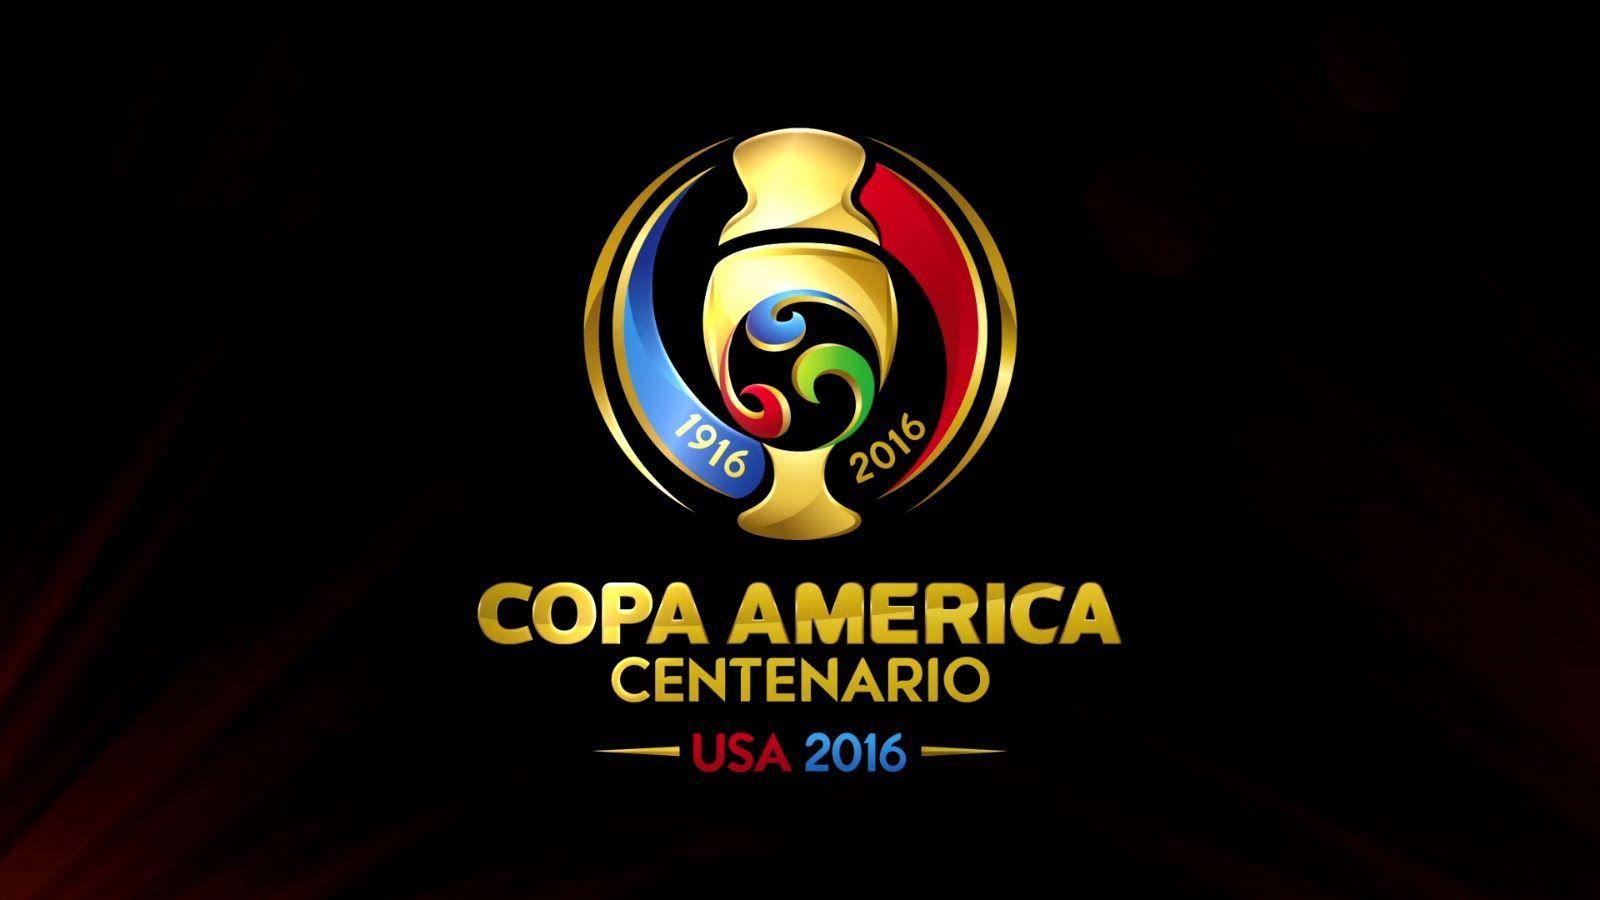 U.S. Soccer to Host Prestigious Copa America Centenario in